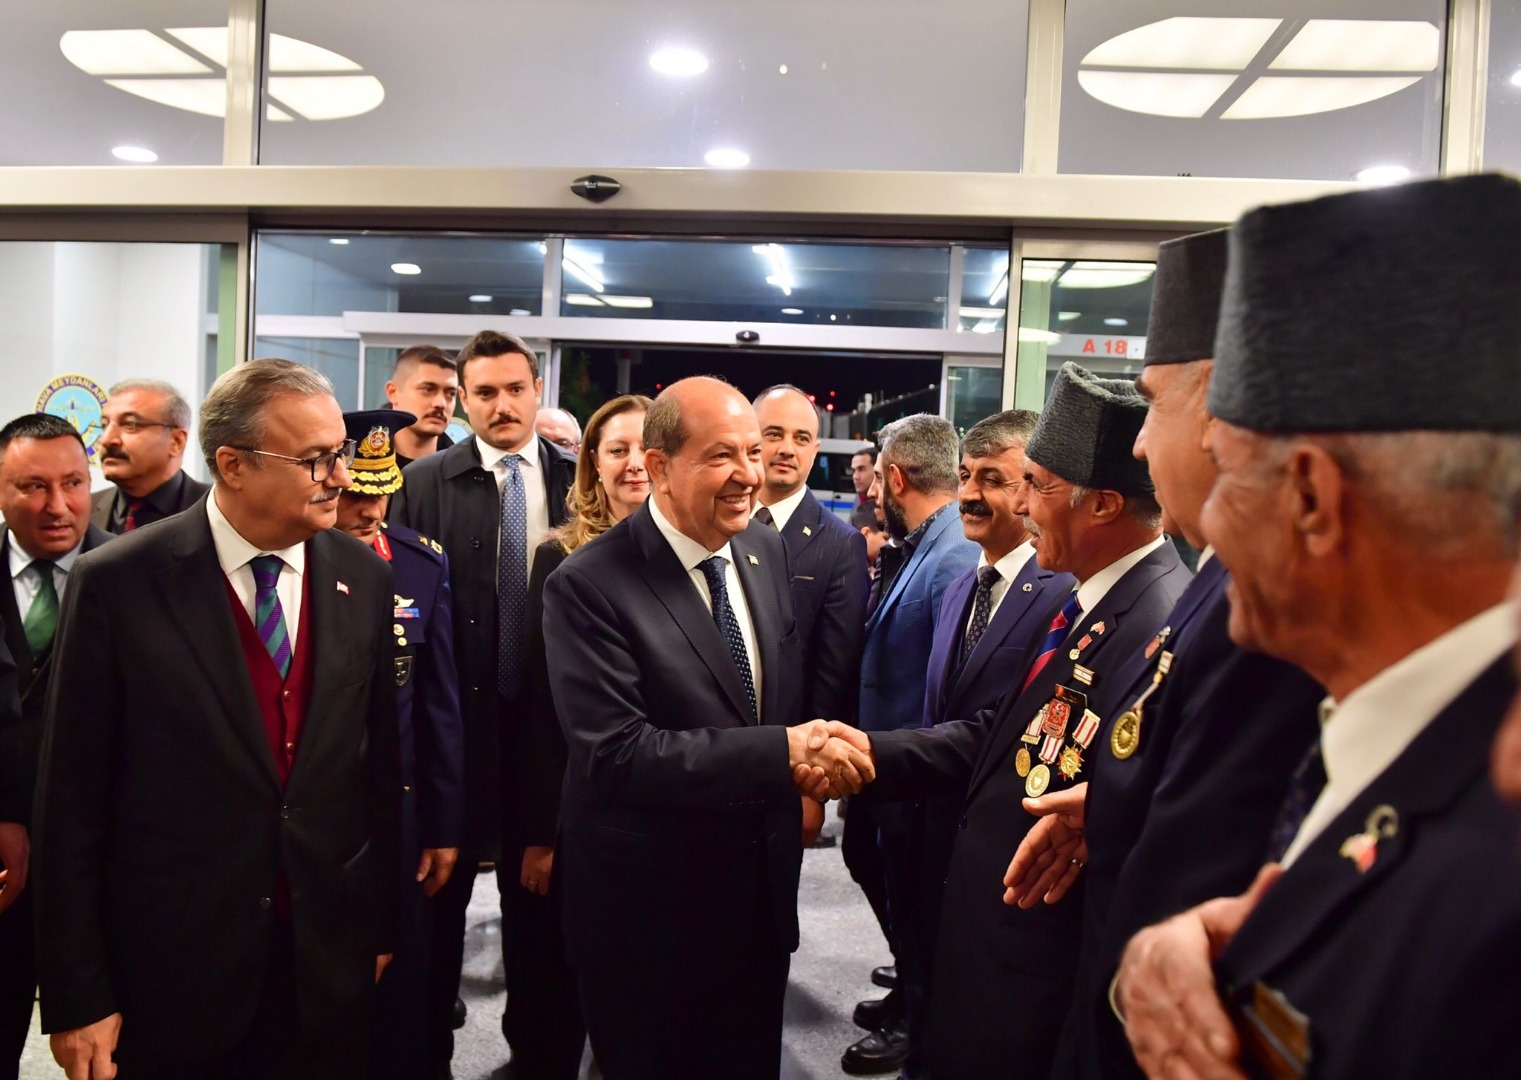 KKTC Cumhurbaşkanı Ersin Tatar Diyarbakır'da